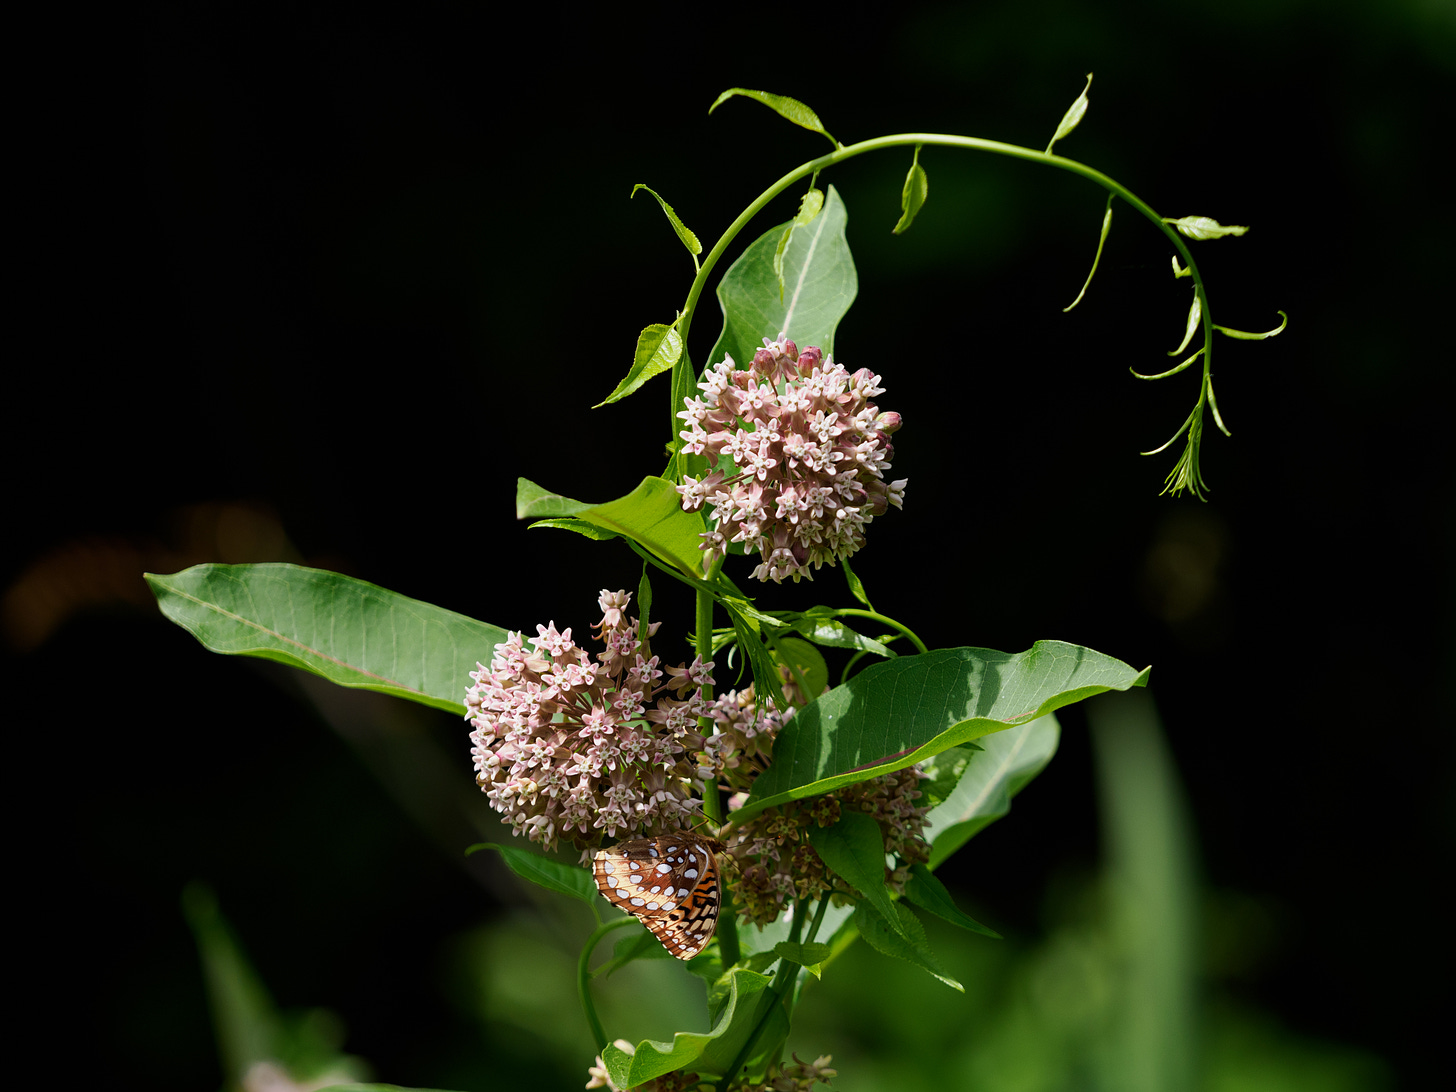 Vine encircling milkweed